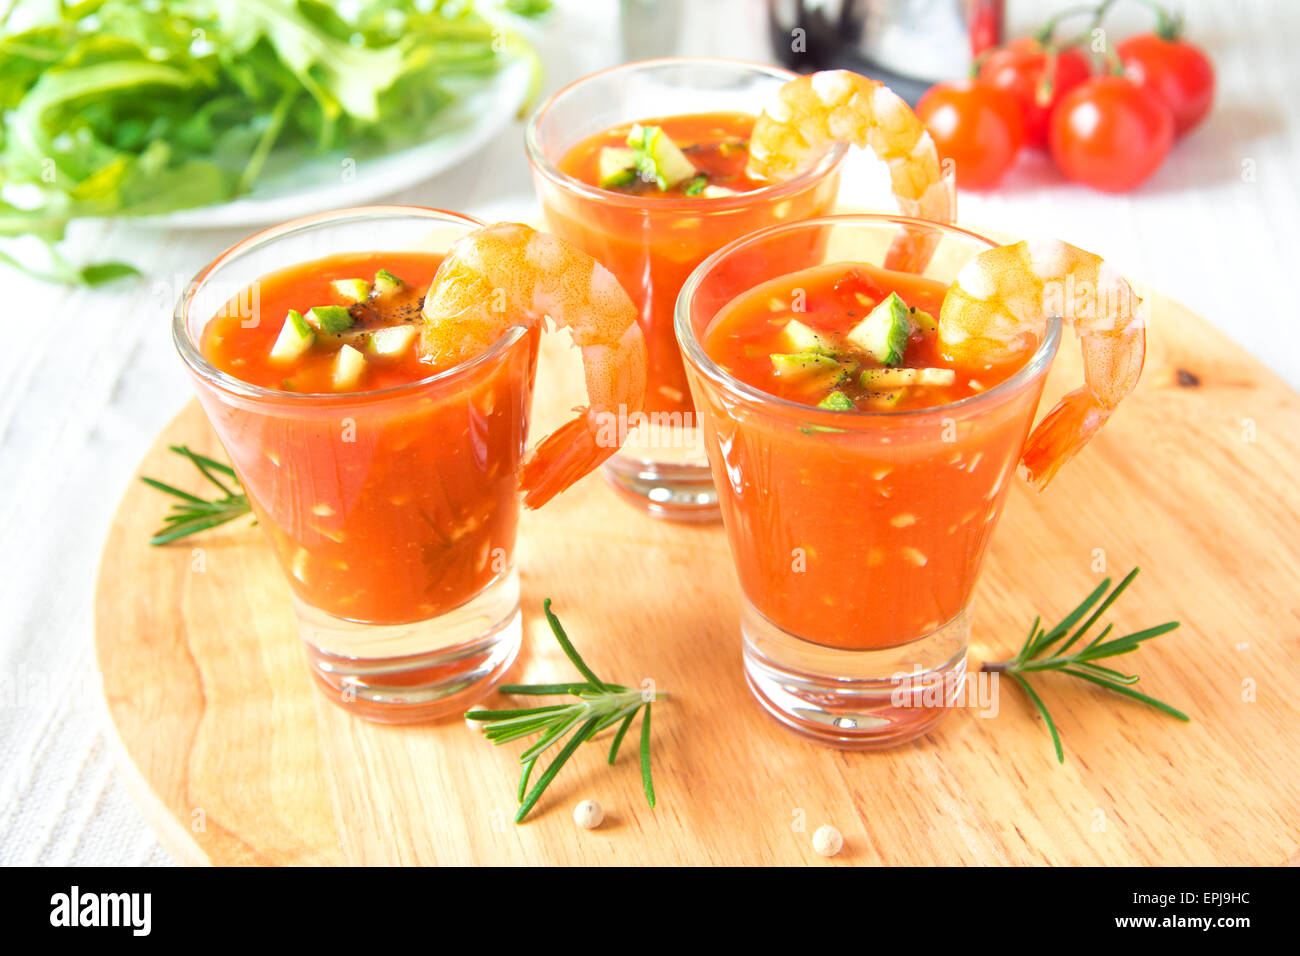 Delizioso freddo gustosa minestra di pomodoro gazpacho con avocado e gamberi nella porzione bicchieri sulla tavola di legno, primo piano, orizzontale Foto Stock